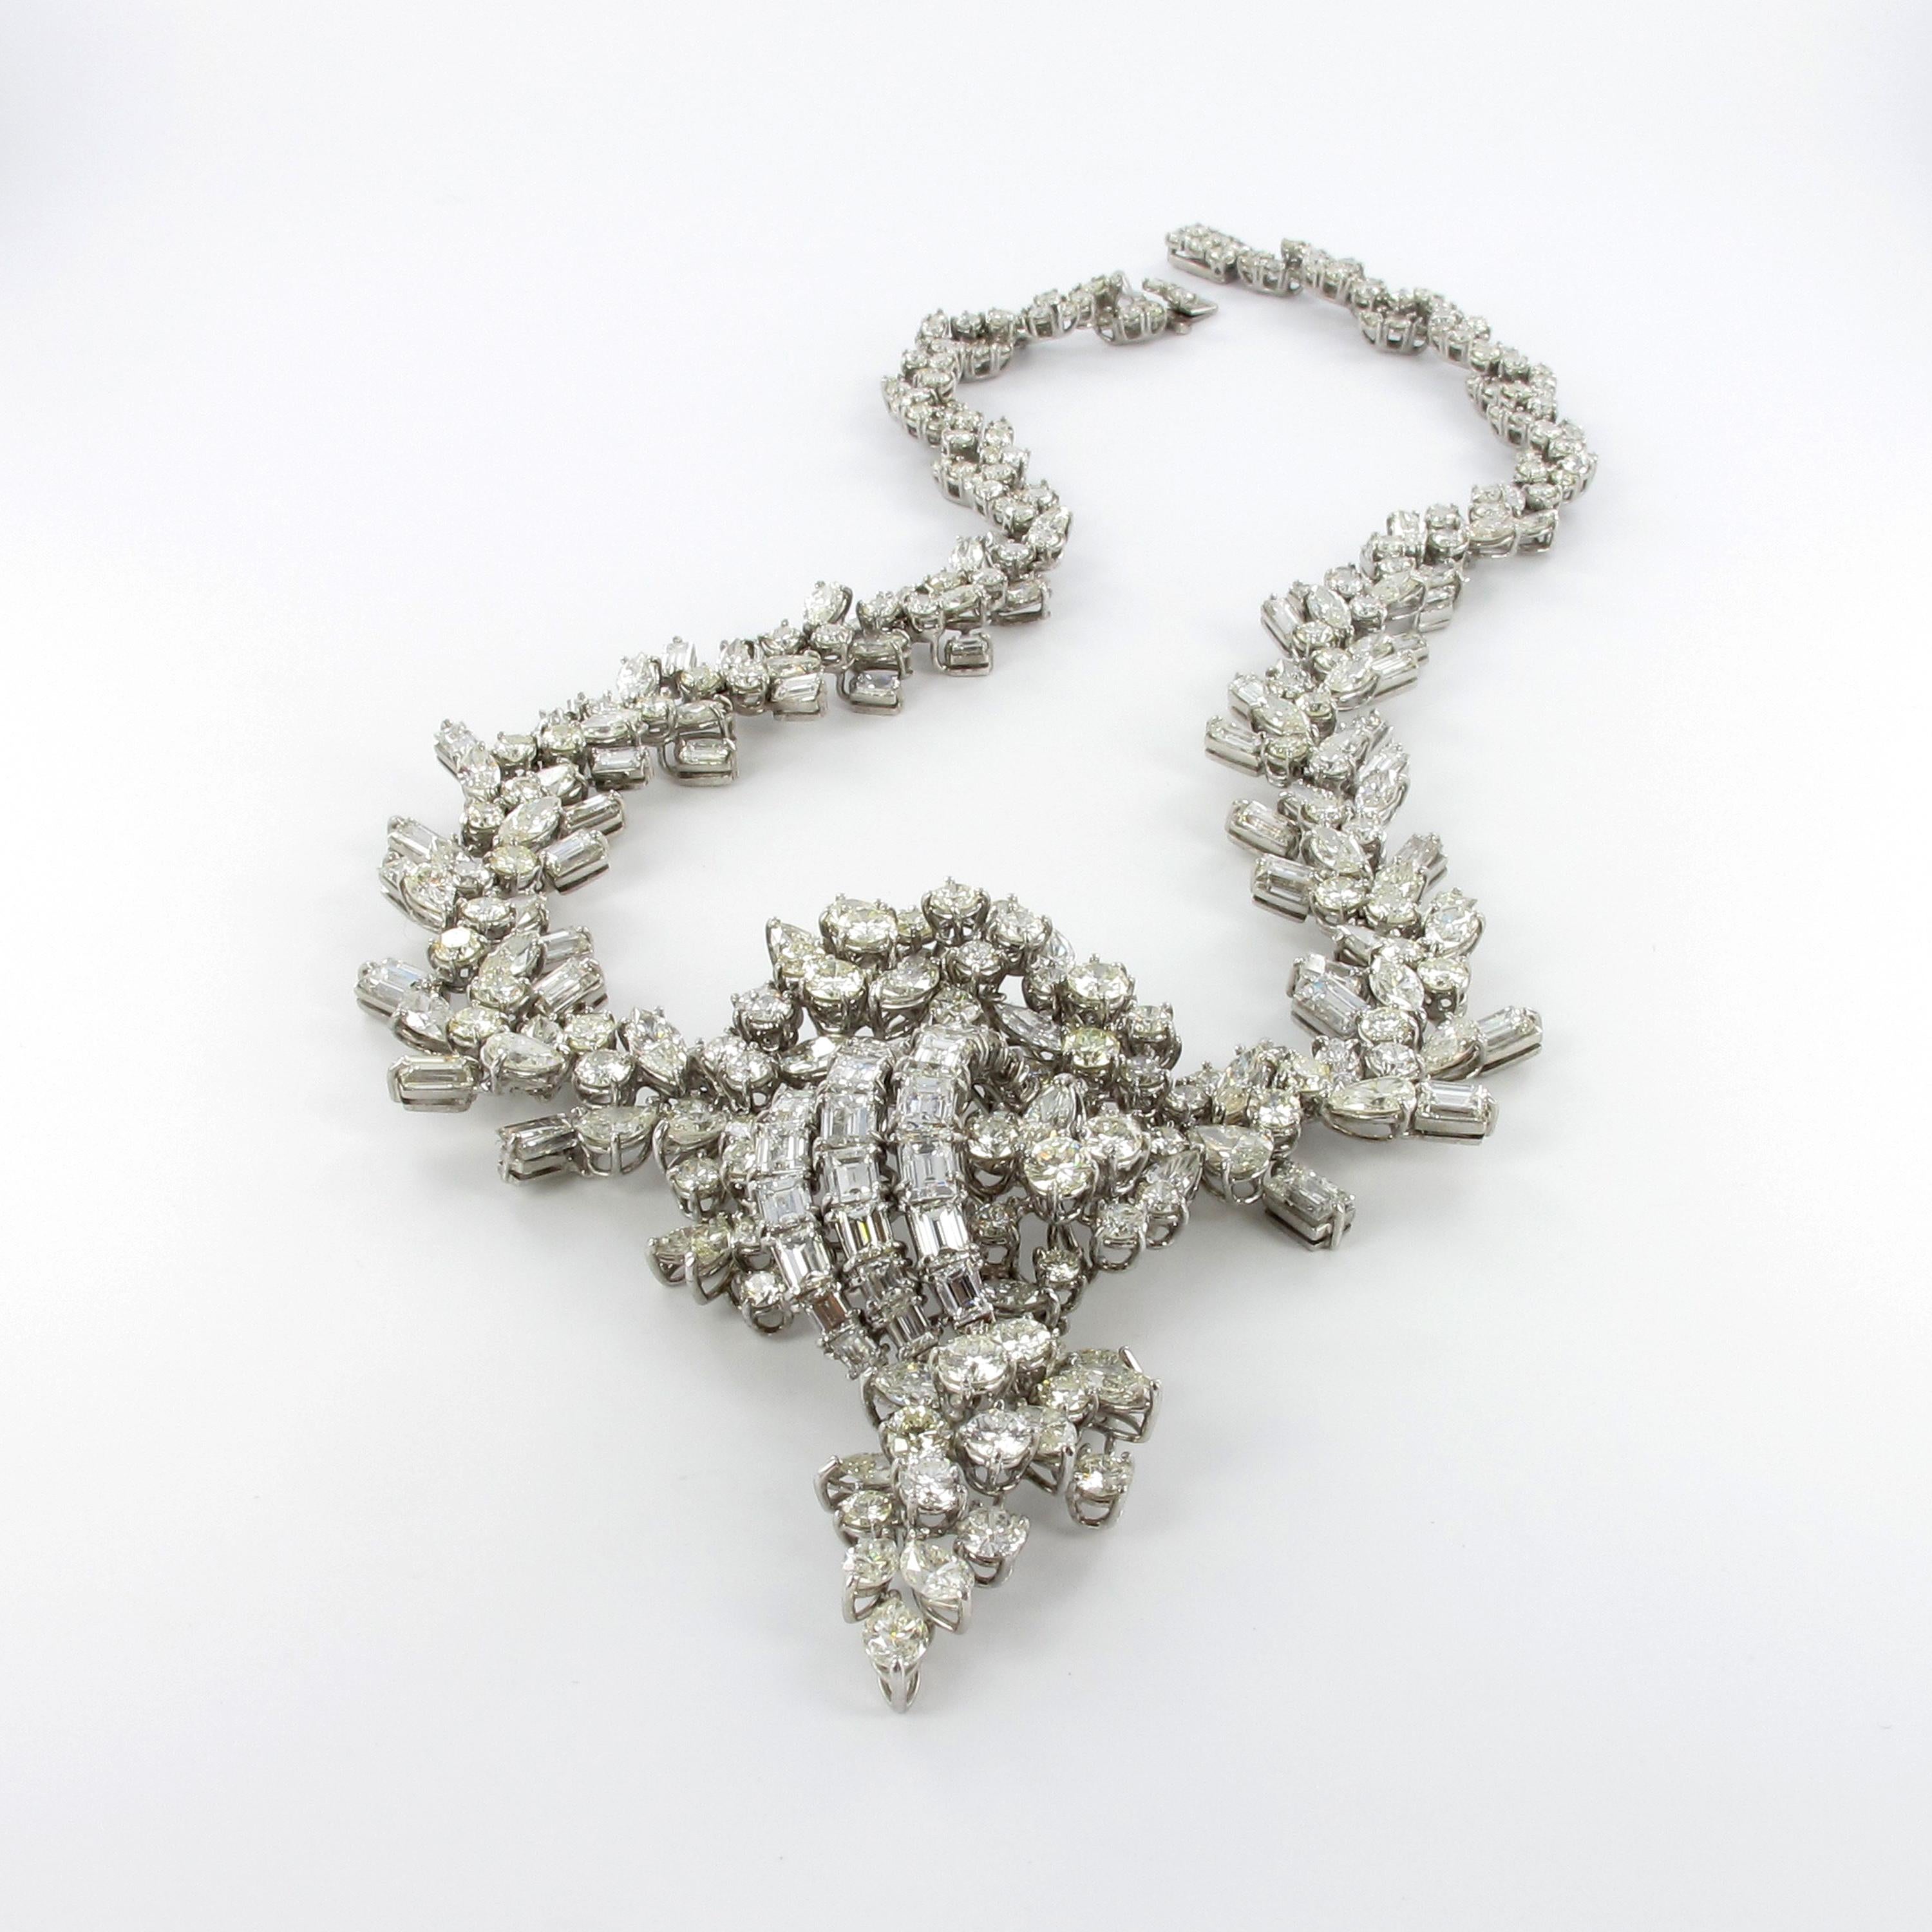 Brilliant Cut Impressive Diamond Necklace in White Gold 18 Karat For Sale